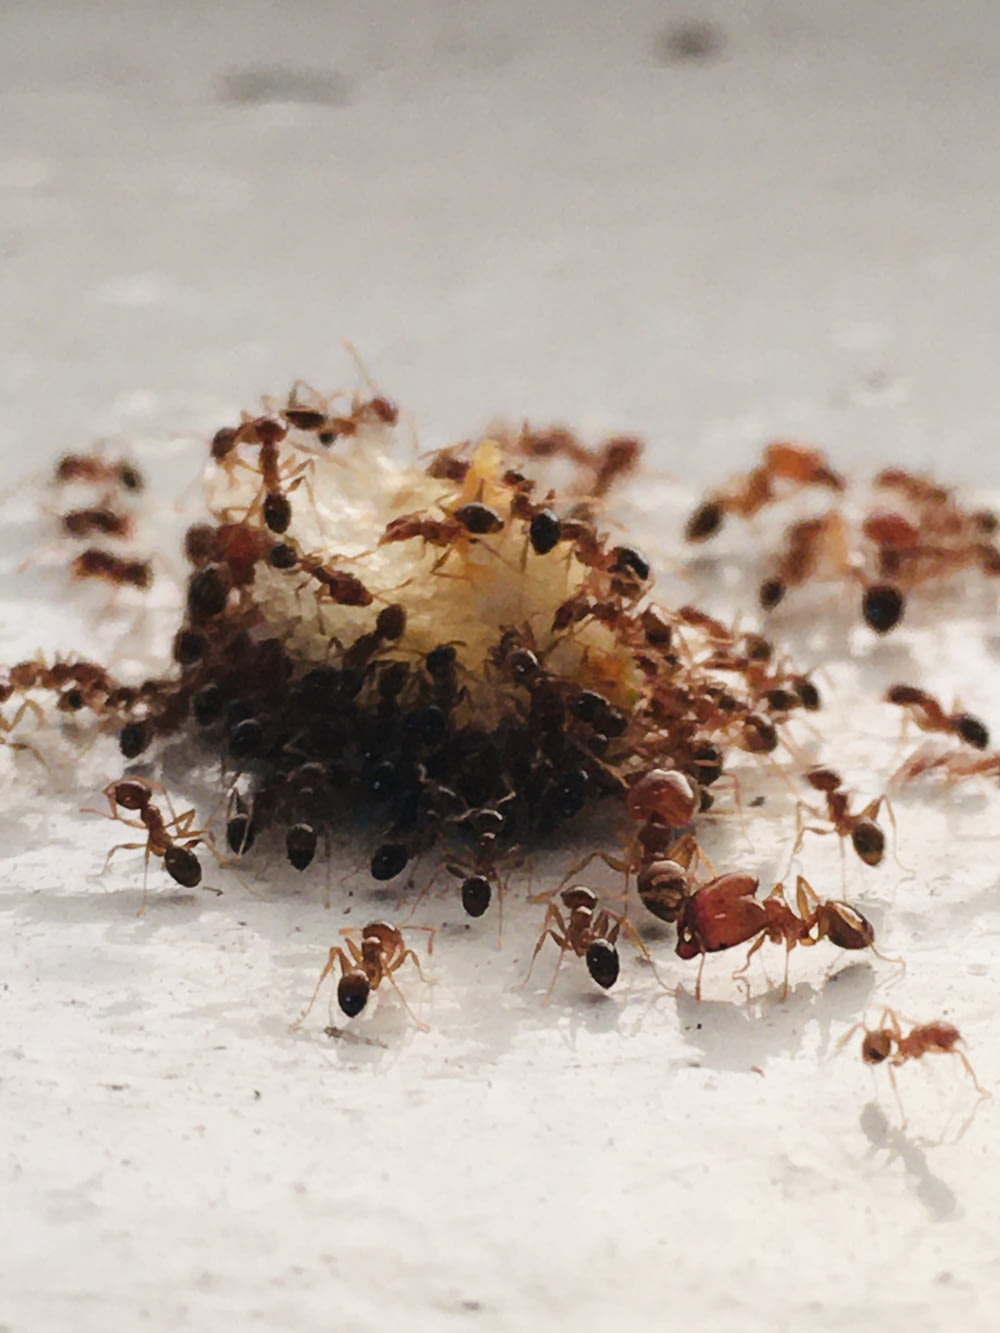 Hormiga marrón y negra sobre superficie blanca